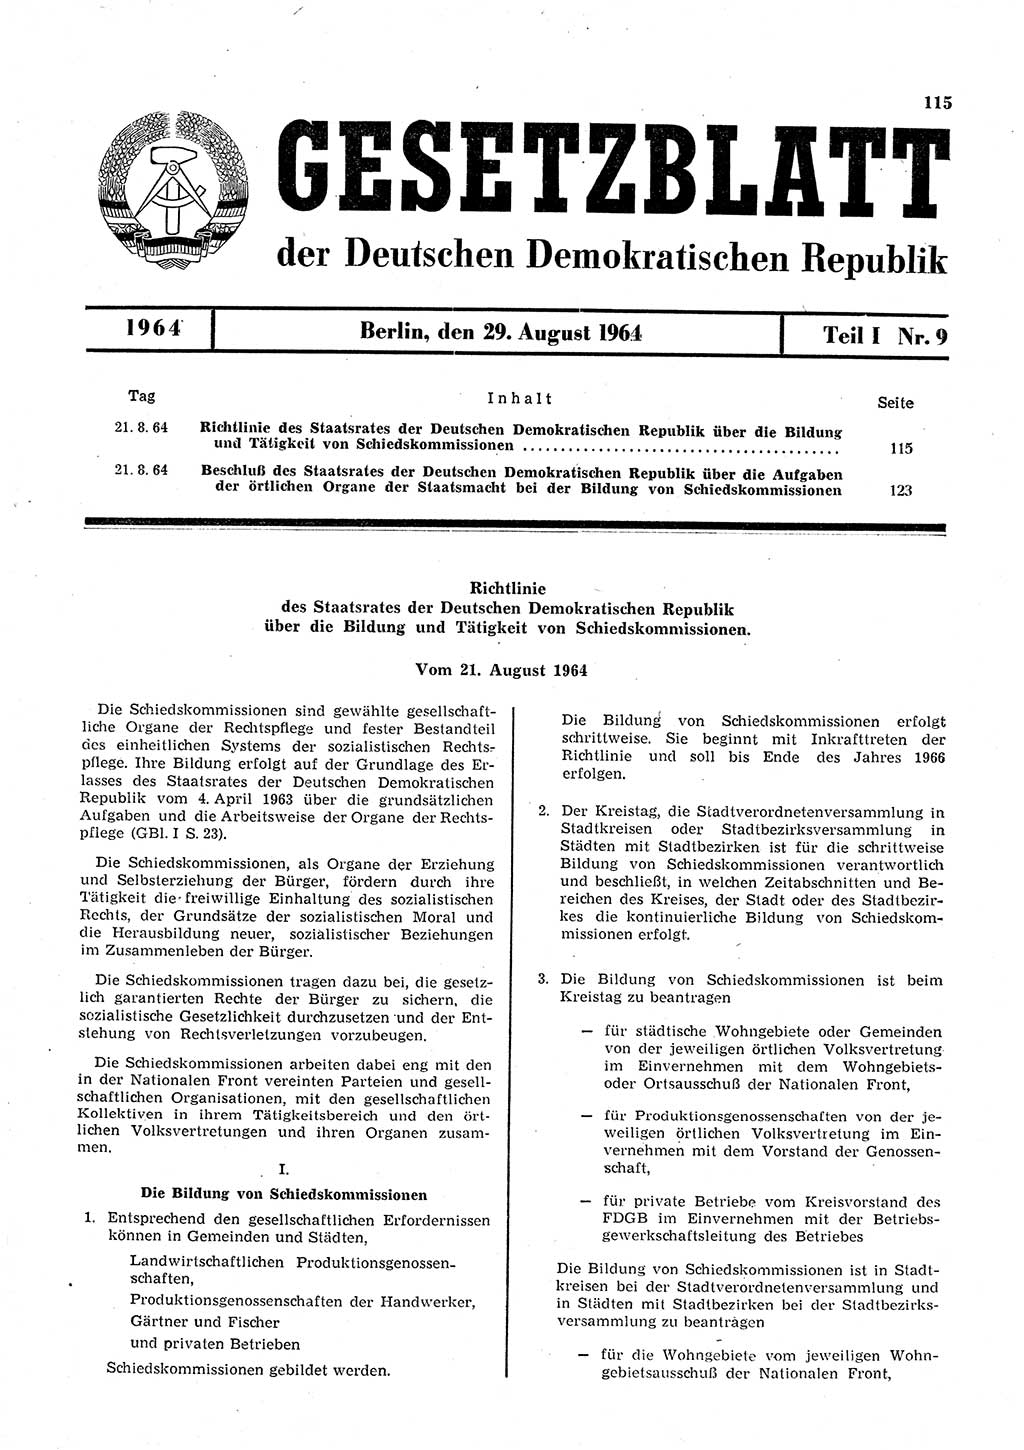 Gesetzblatt (GBl.) der Deutschen Demokratischen Republik (DDR) Teil Ⅰ 1964, Seite 115 (GBl. DDR Ⅰ 1964, S. 115)